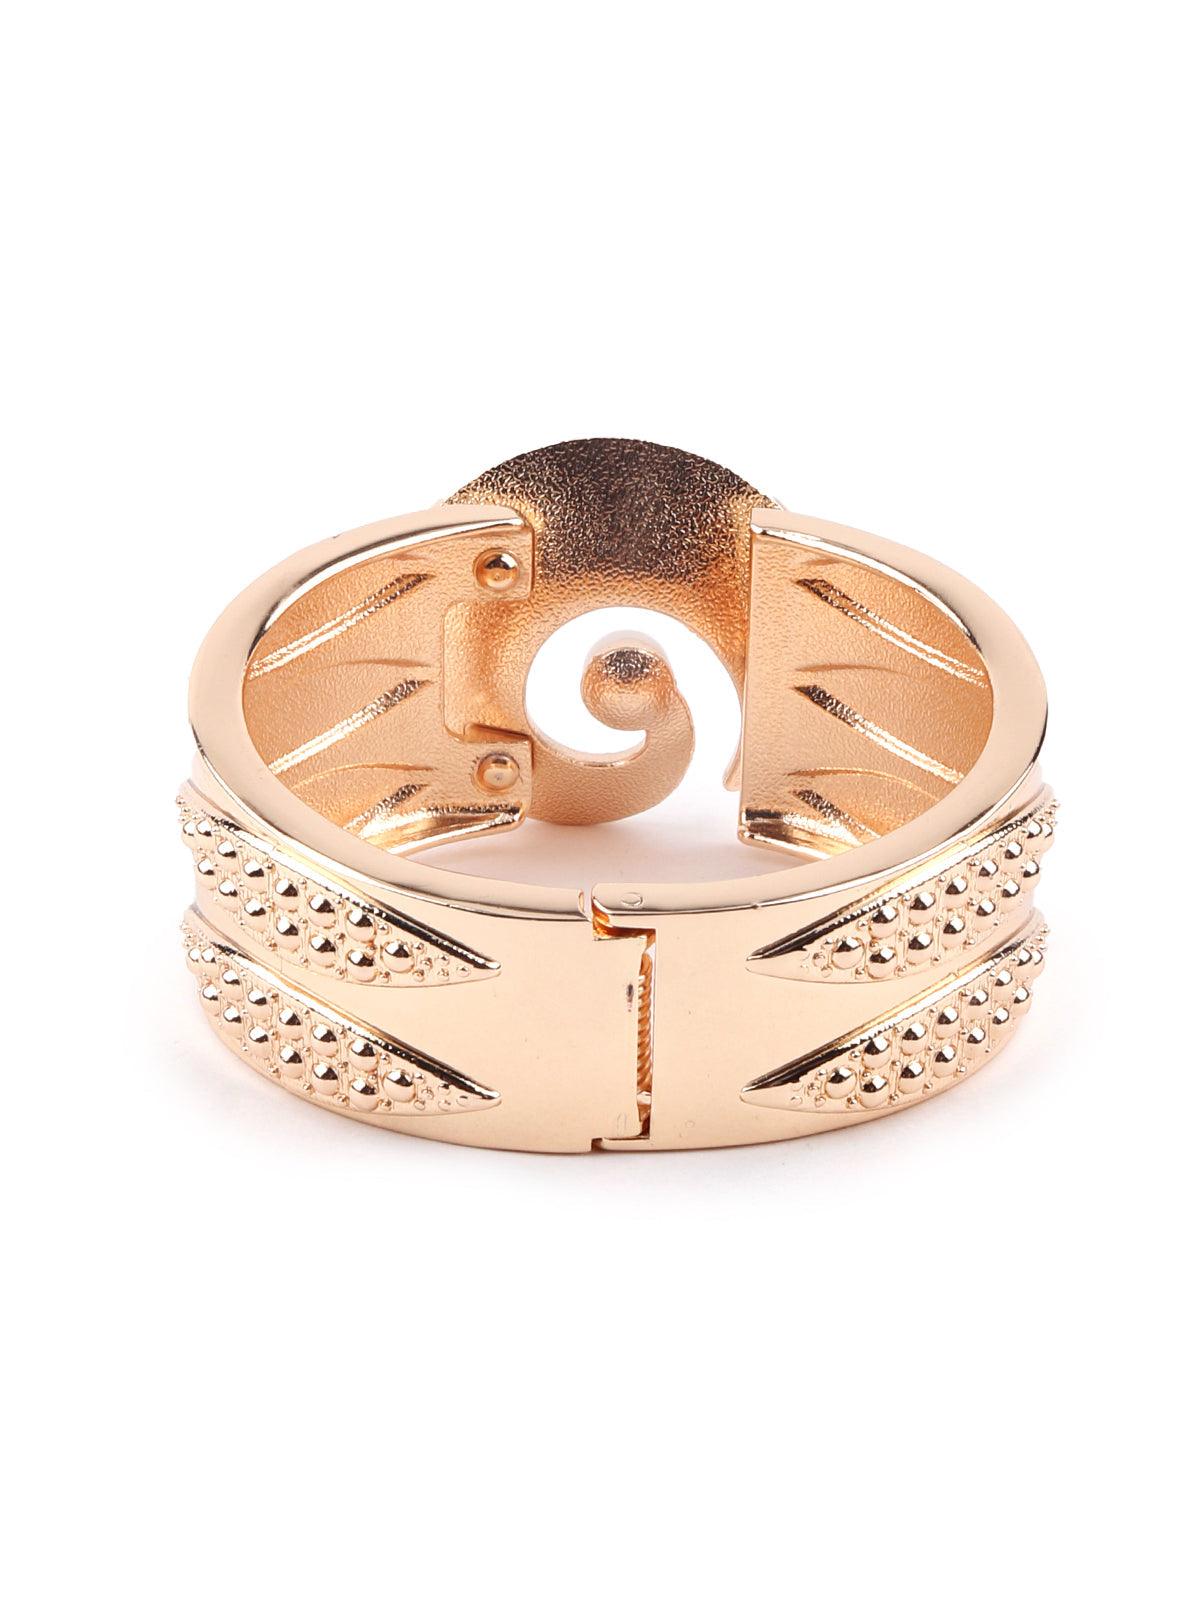 Broad gold studded bracelet for women - Odette